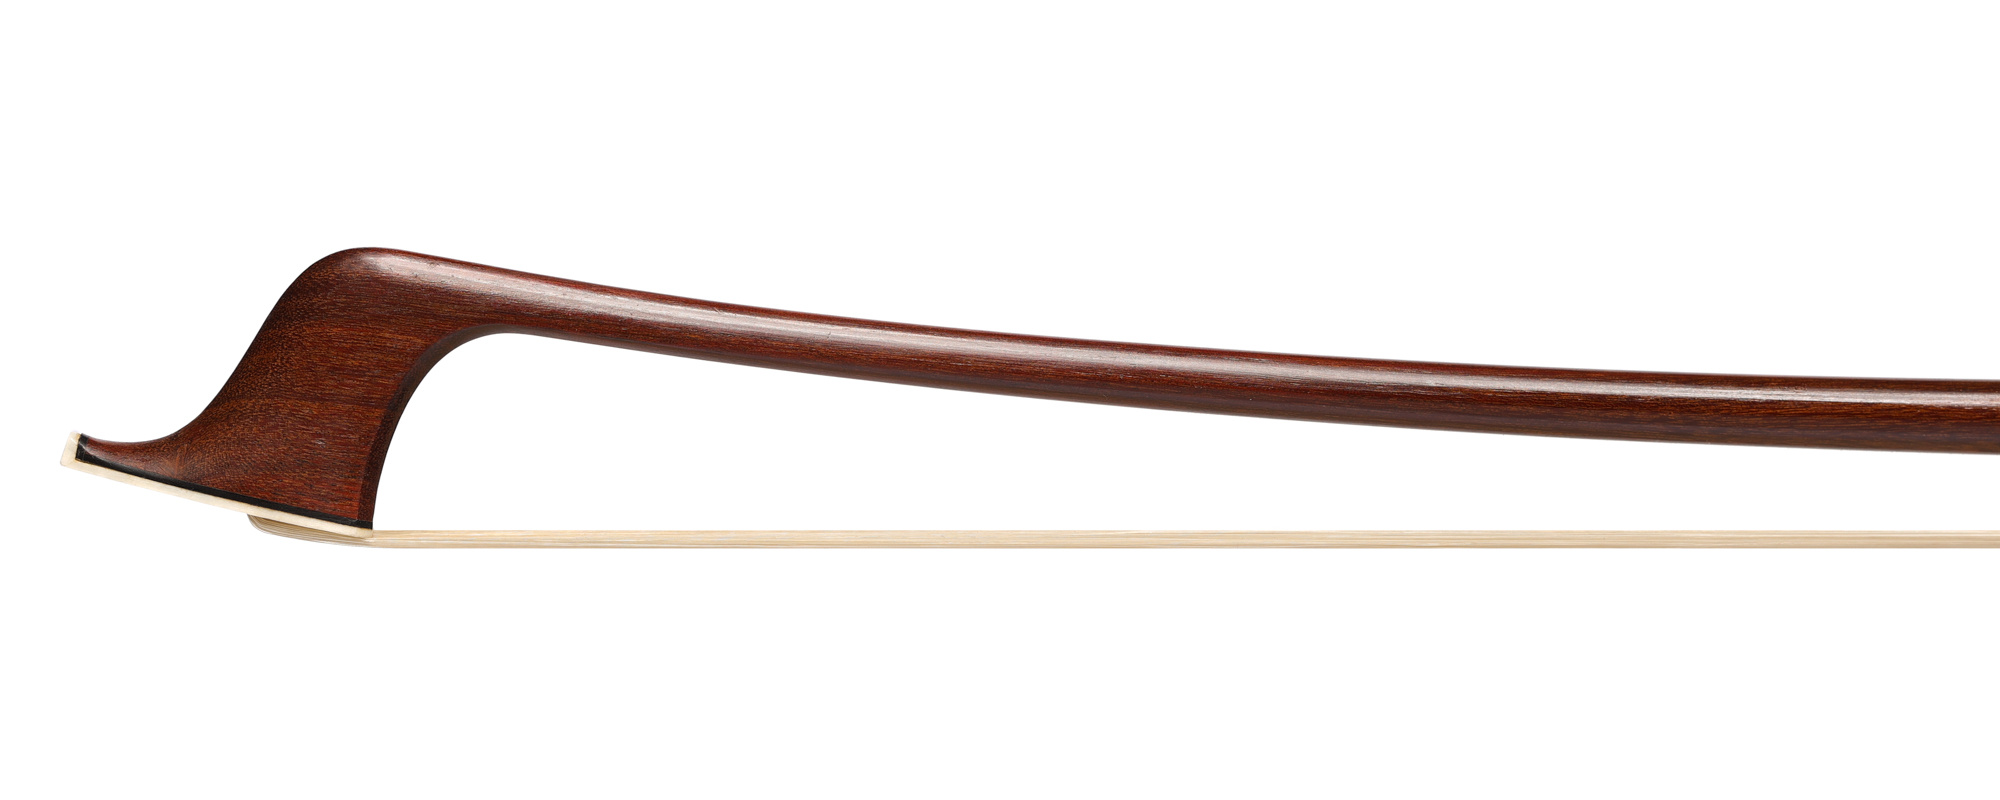 D. MUNIZ silver cello bow, used, round Pernambuco stick, Brazil